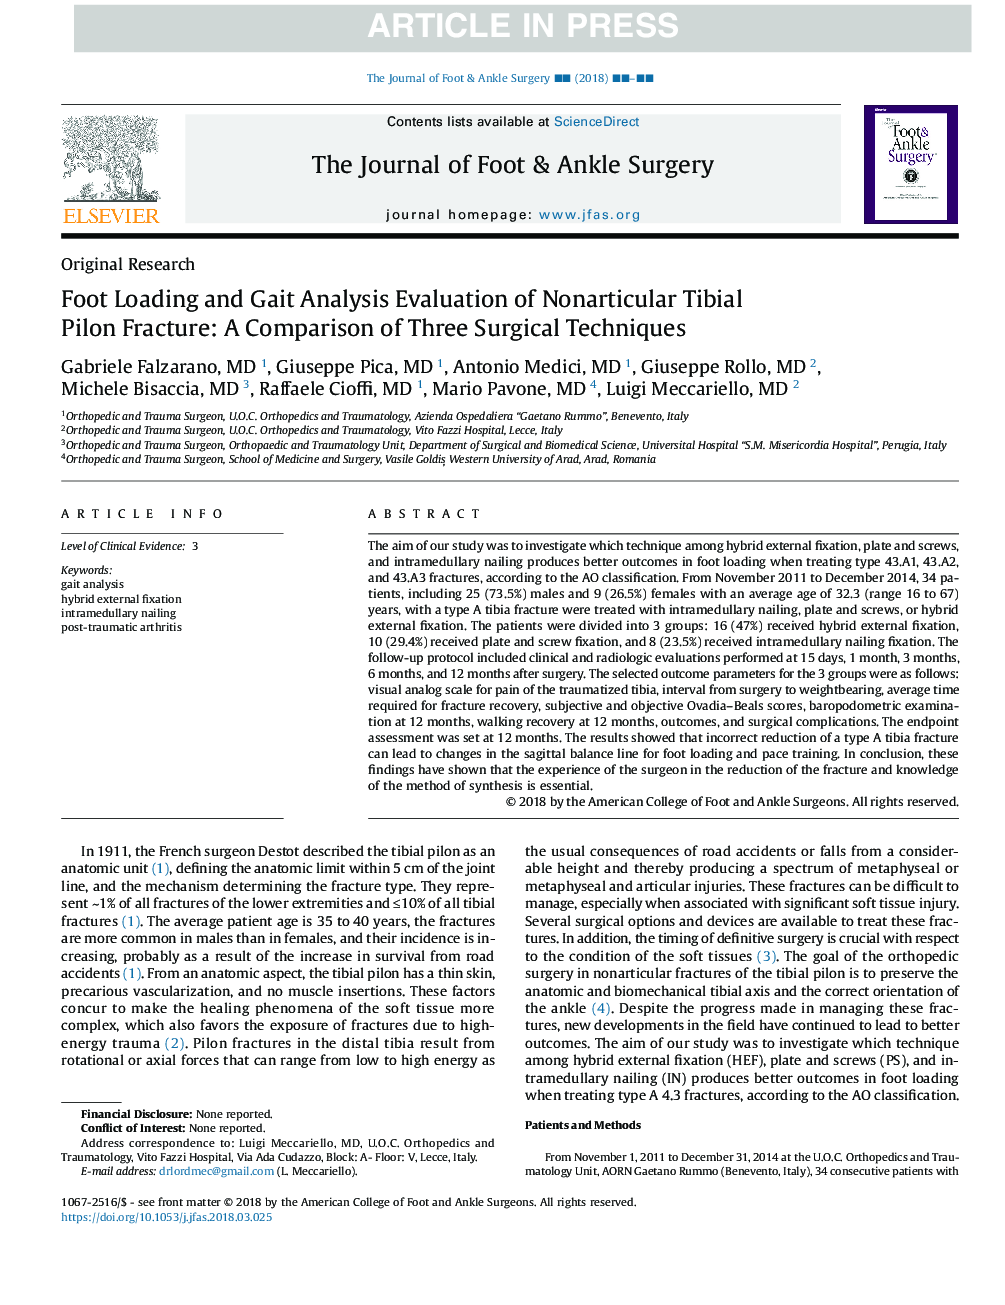 تجزیه و تحلیل پا بر روی پا و تجزیه و تحلیل گسستگی شکستگی پیلون تیبای غیر اختصاصی: مقایسه سه روش جراحی